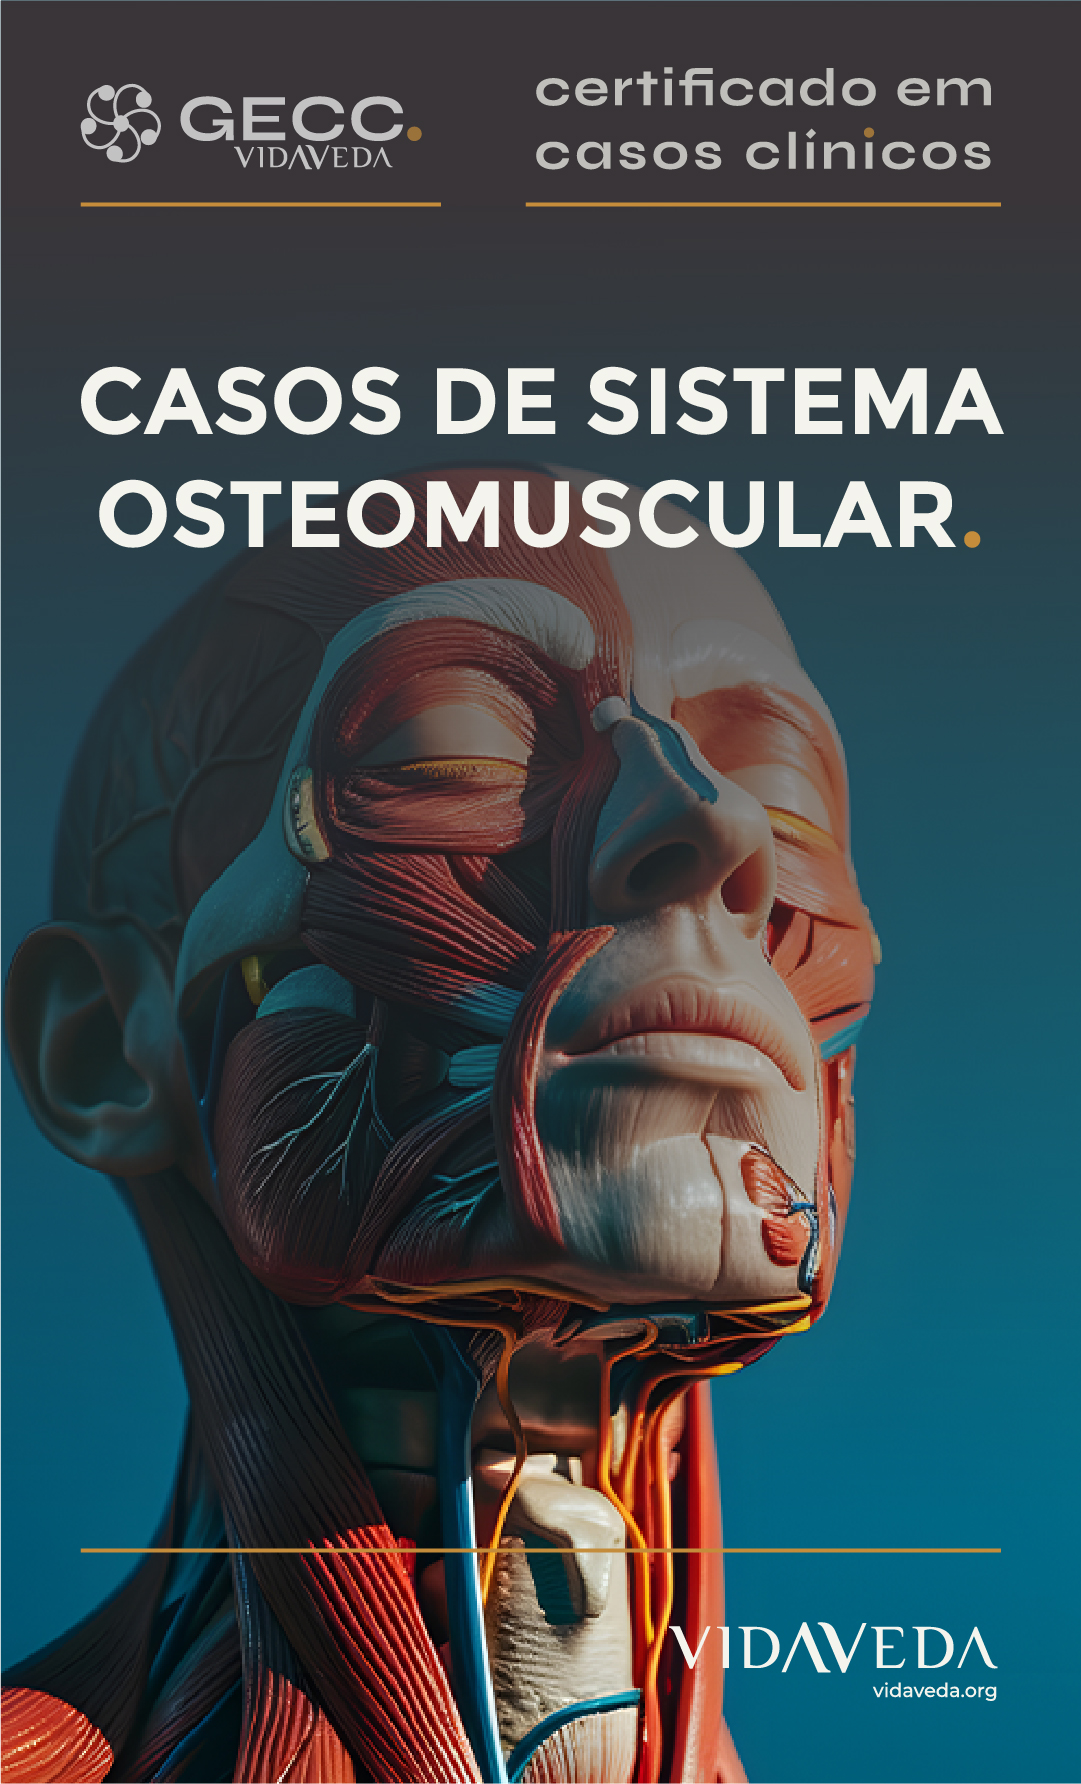 GECC - CASOS DE SISTEMA DE OSTEOMUSCULAR